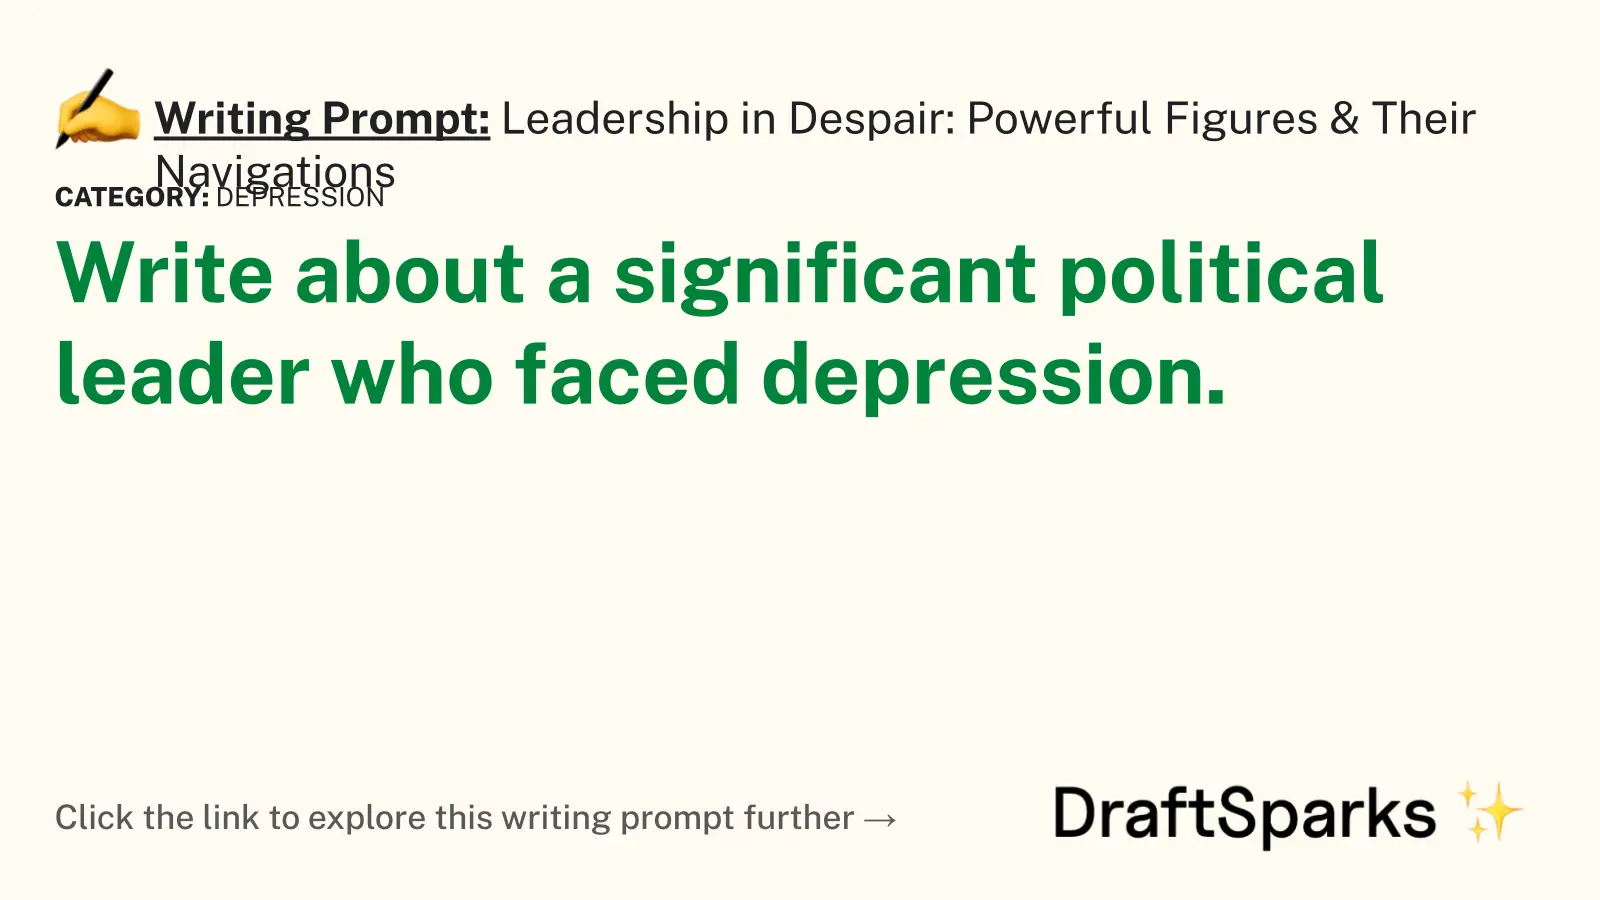 Leadership in Despair: Powerful Figures & Their Navigations